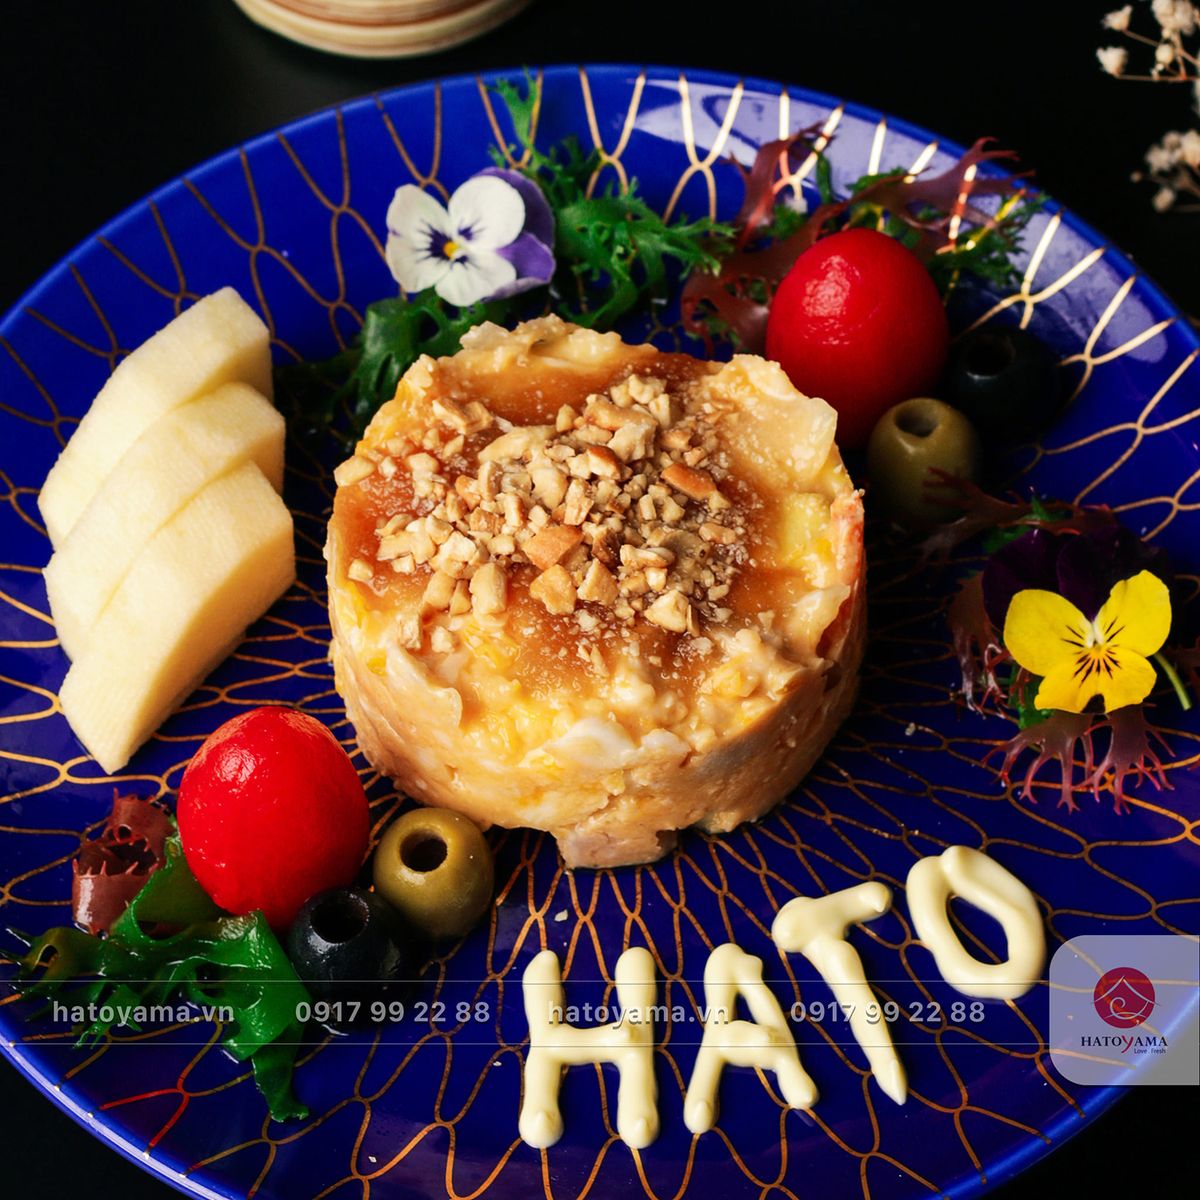 Nhà hàng Hatoyama - Địa chỉ thưởng thức ẩm thực Nhật Bản cao cấp 10